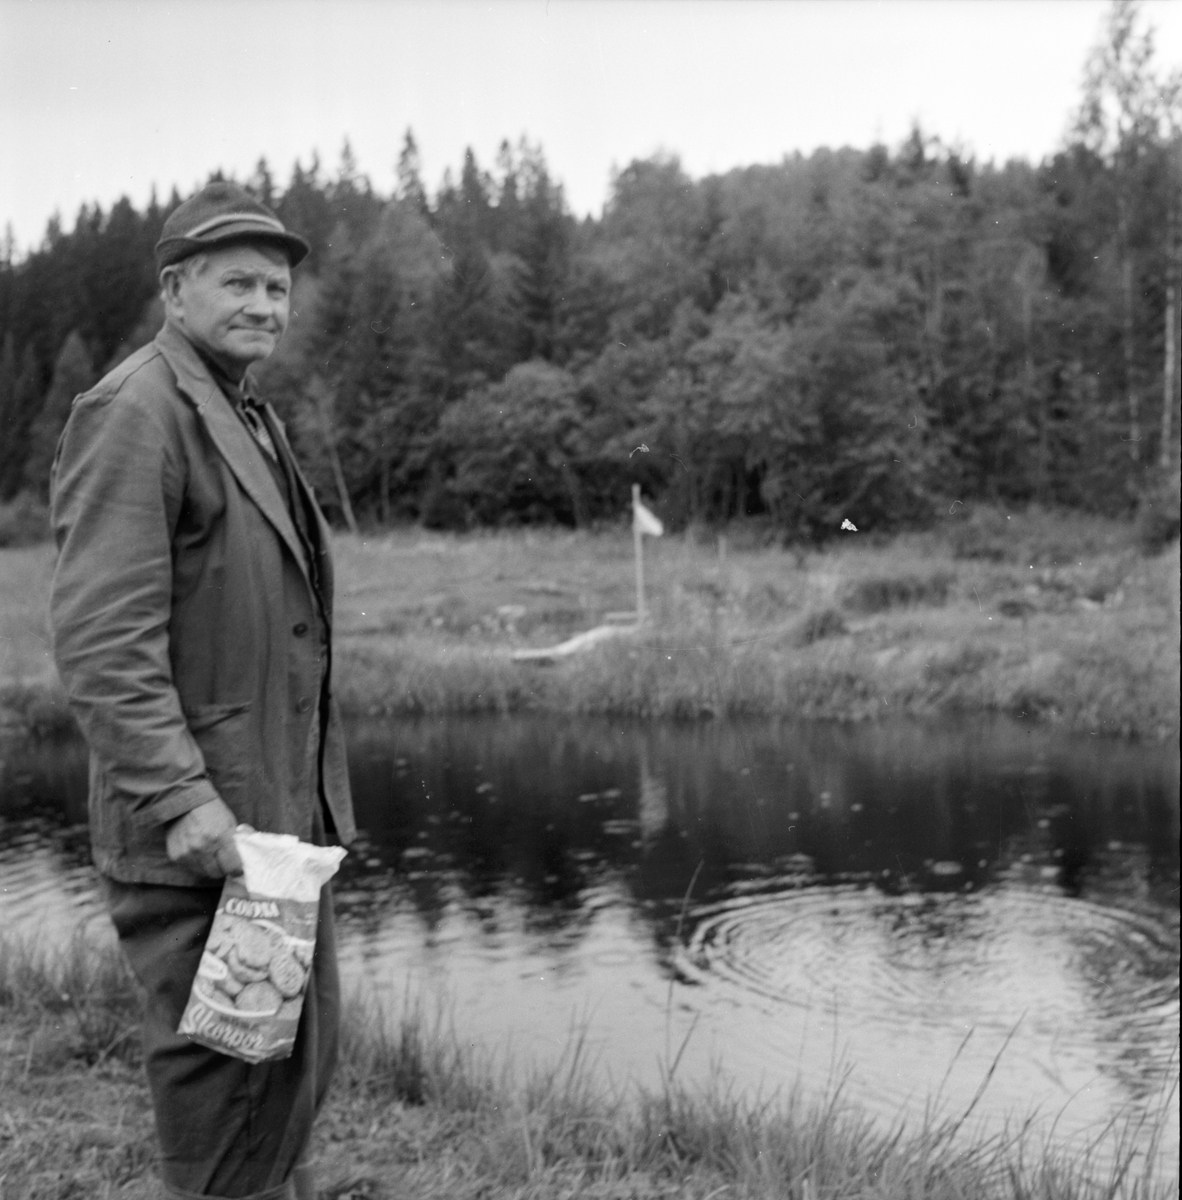 Belsbo,
Karl Jonsson, fiskodlare,
18 Augusti 1964